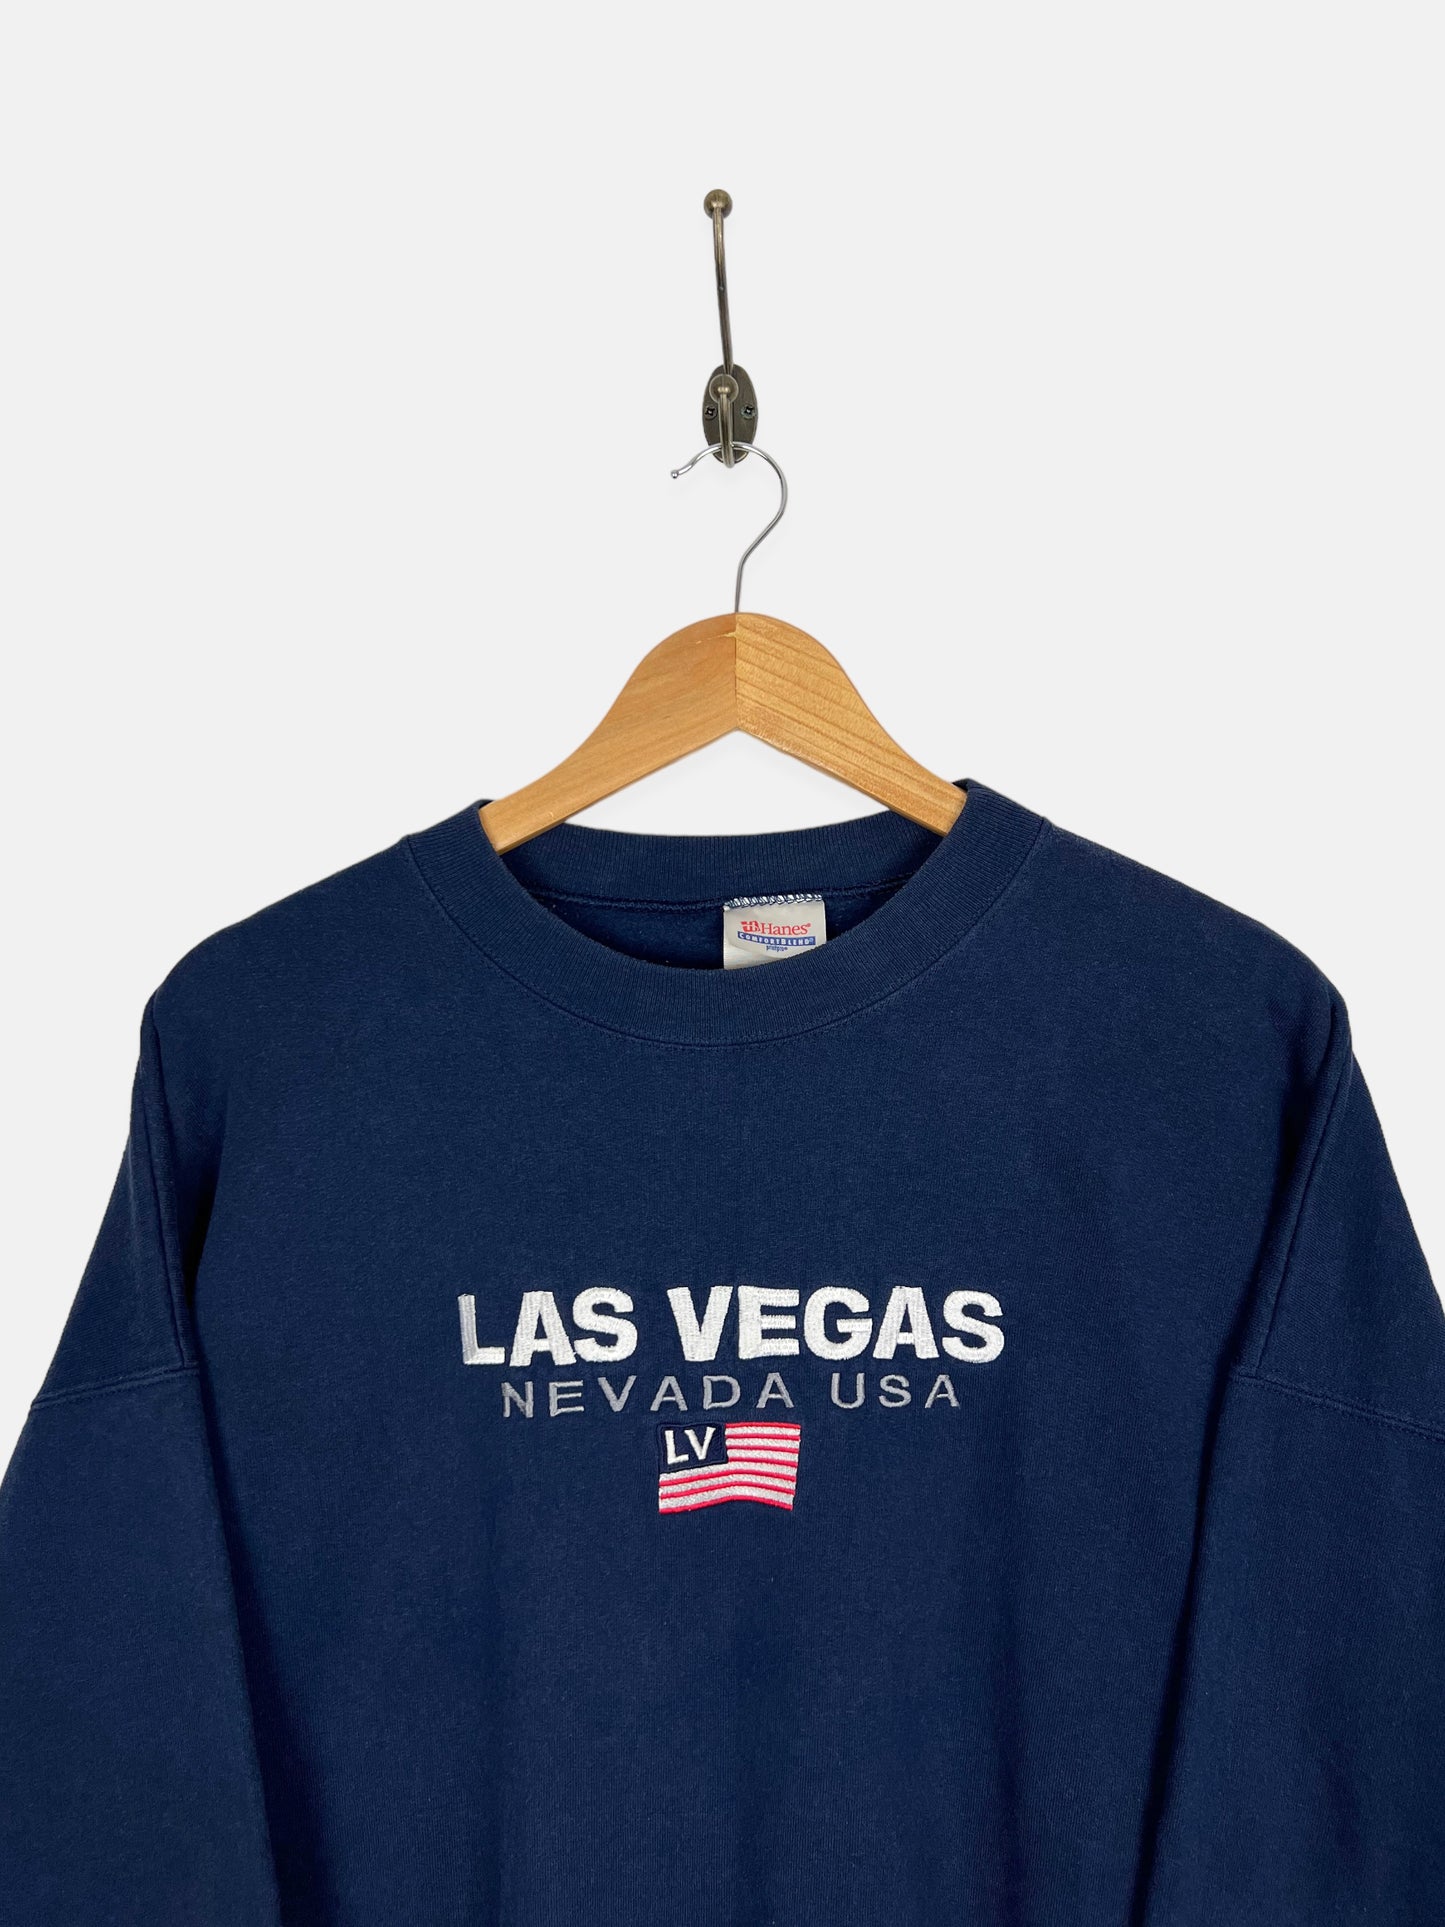 90's Las Vegas Nevada Embroidered Vintage Sweatshirt Size M-L